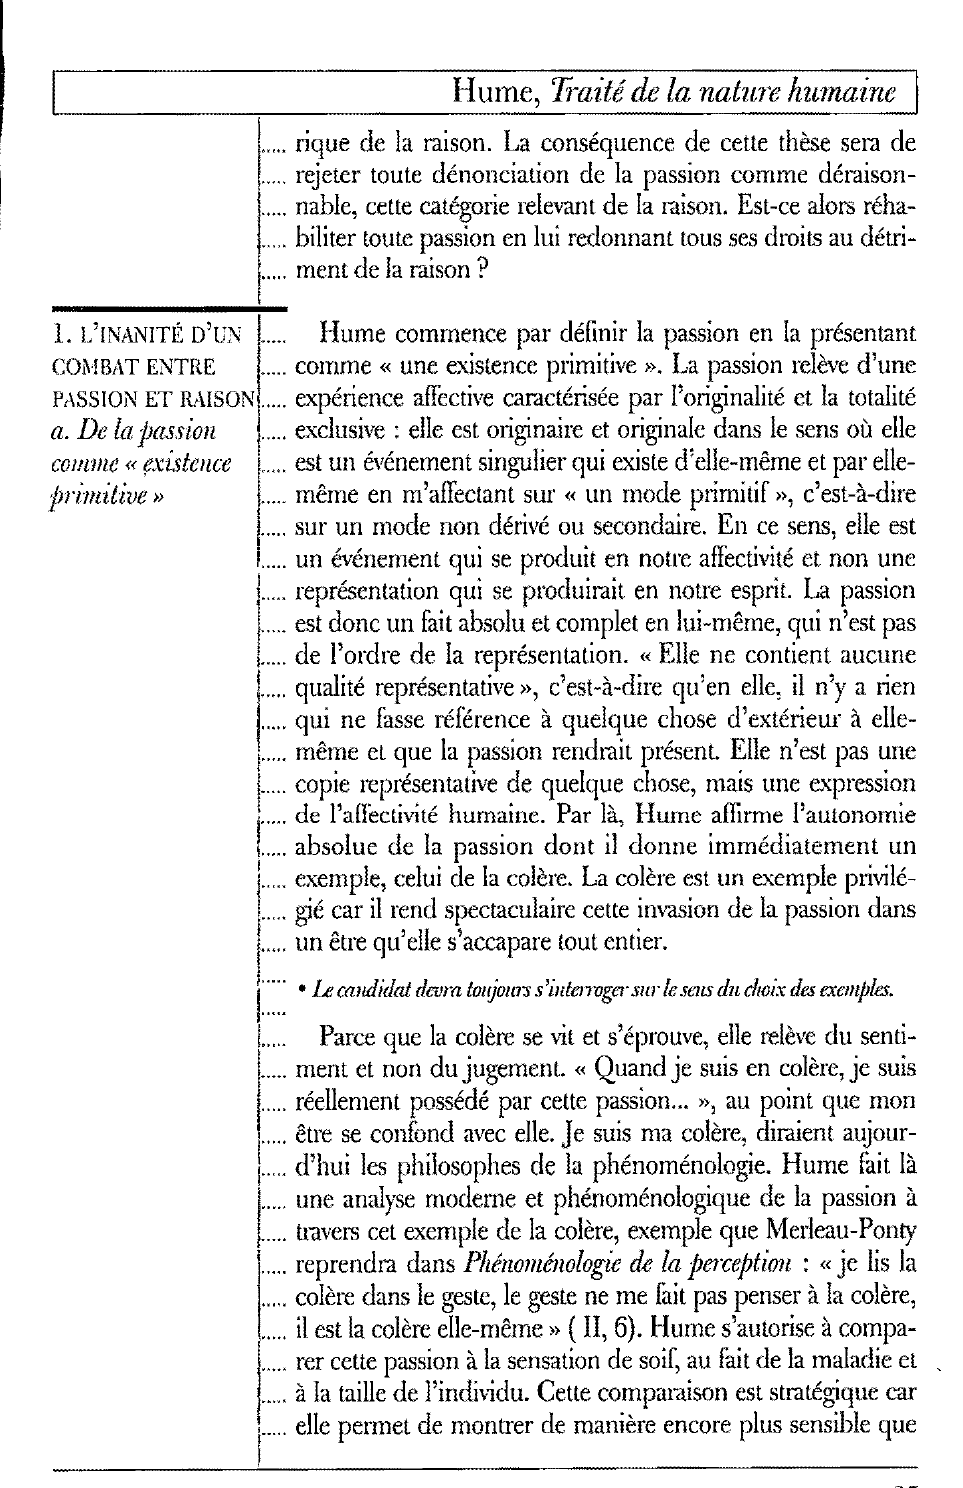 Prévisualisation du document La passion: David Hume, Traité de la nature humaine, II, 3e partie, section III.